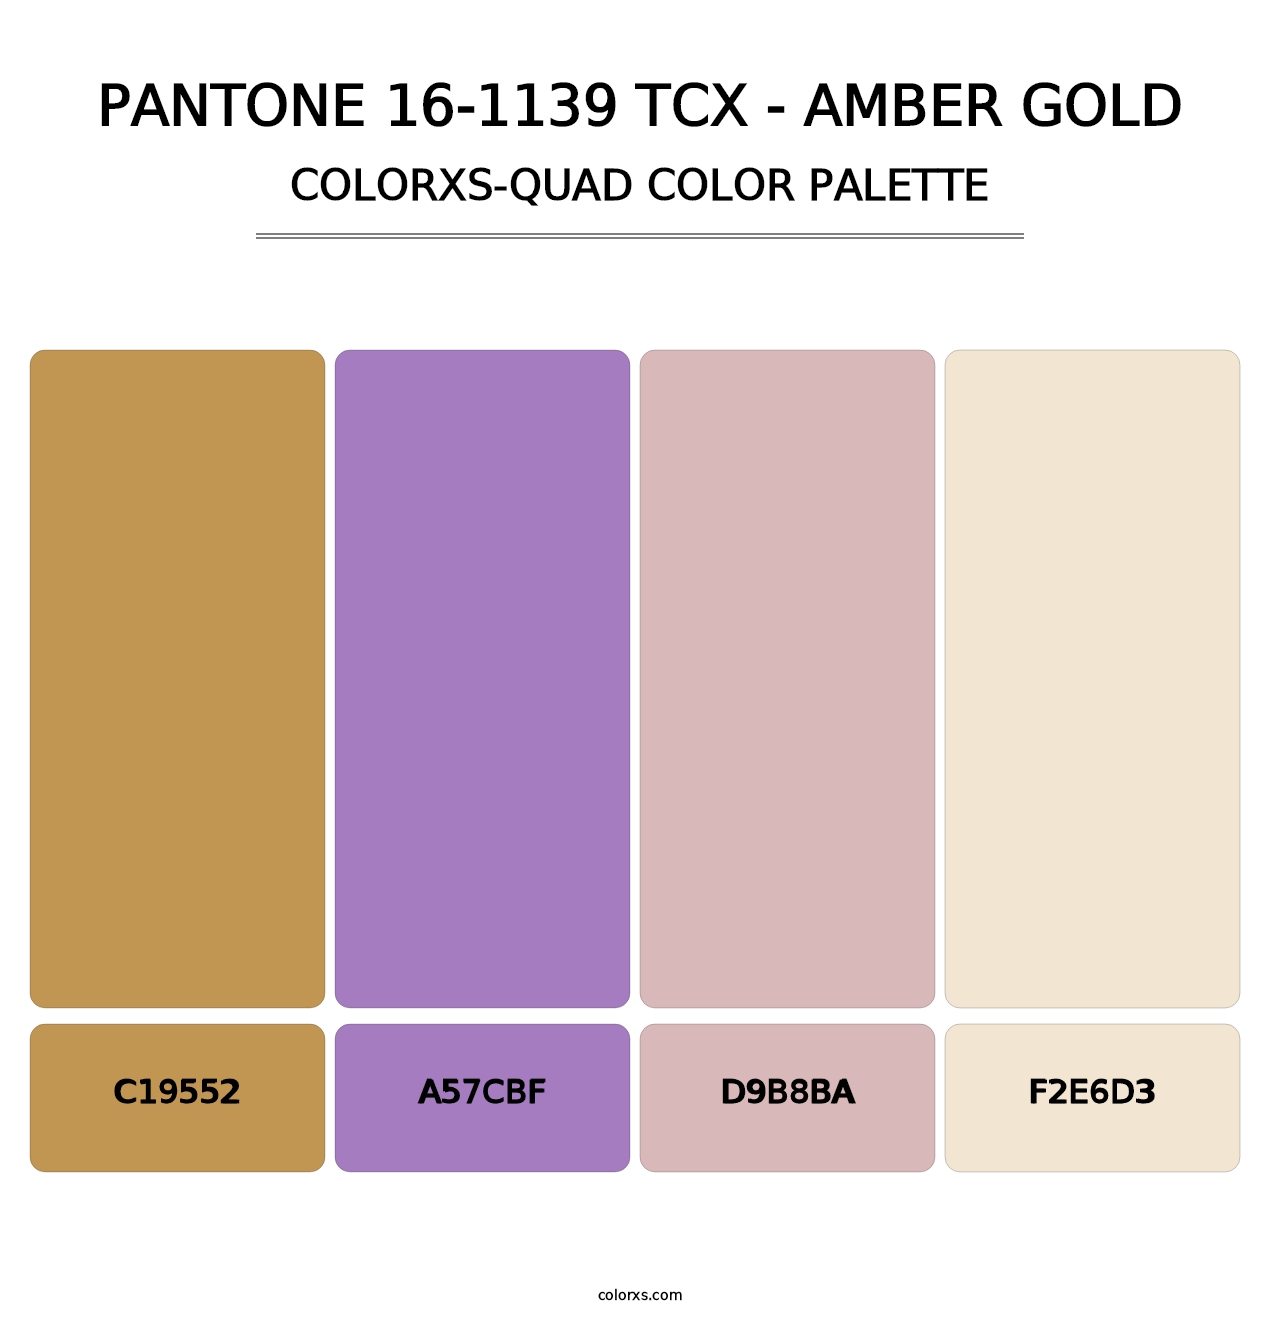 PANTONE 16-1139 TCX - Amber Gold - Colorxs Quad Palette